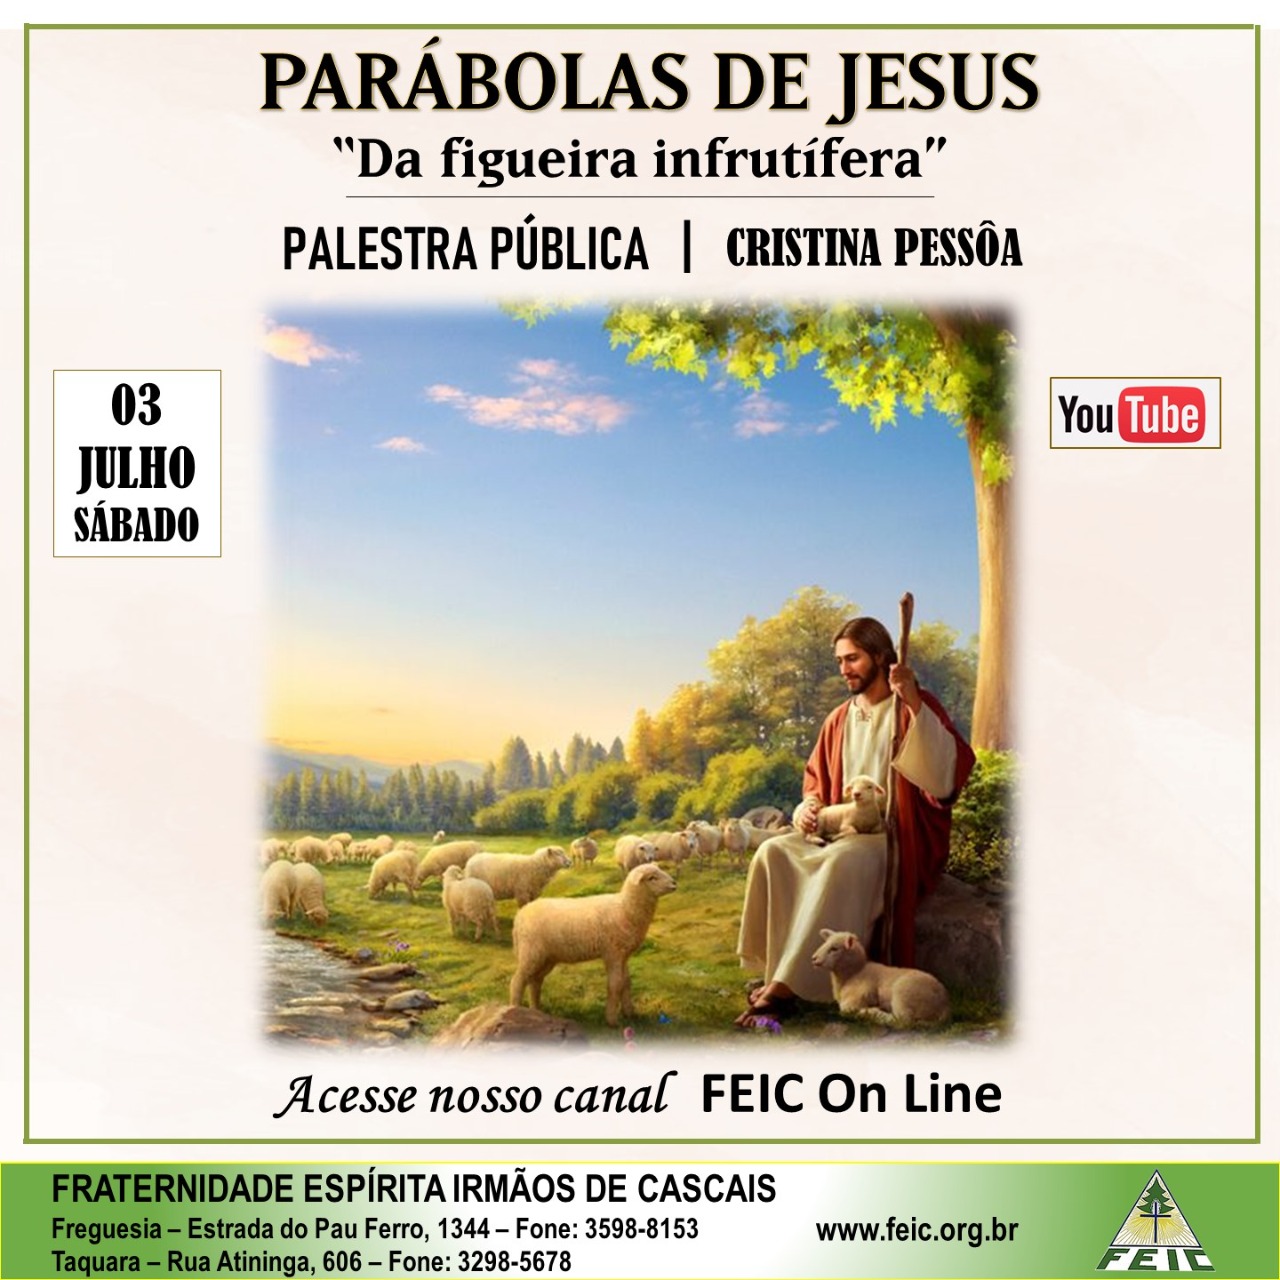 Parábolas de Jesus<br>
Da fruteira infrutífera